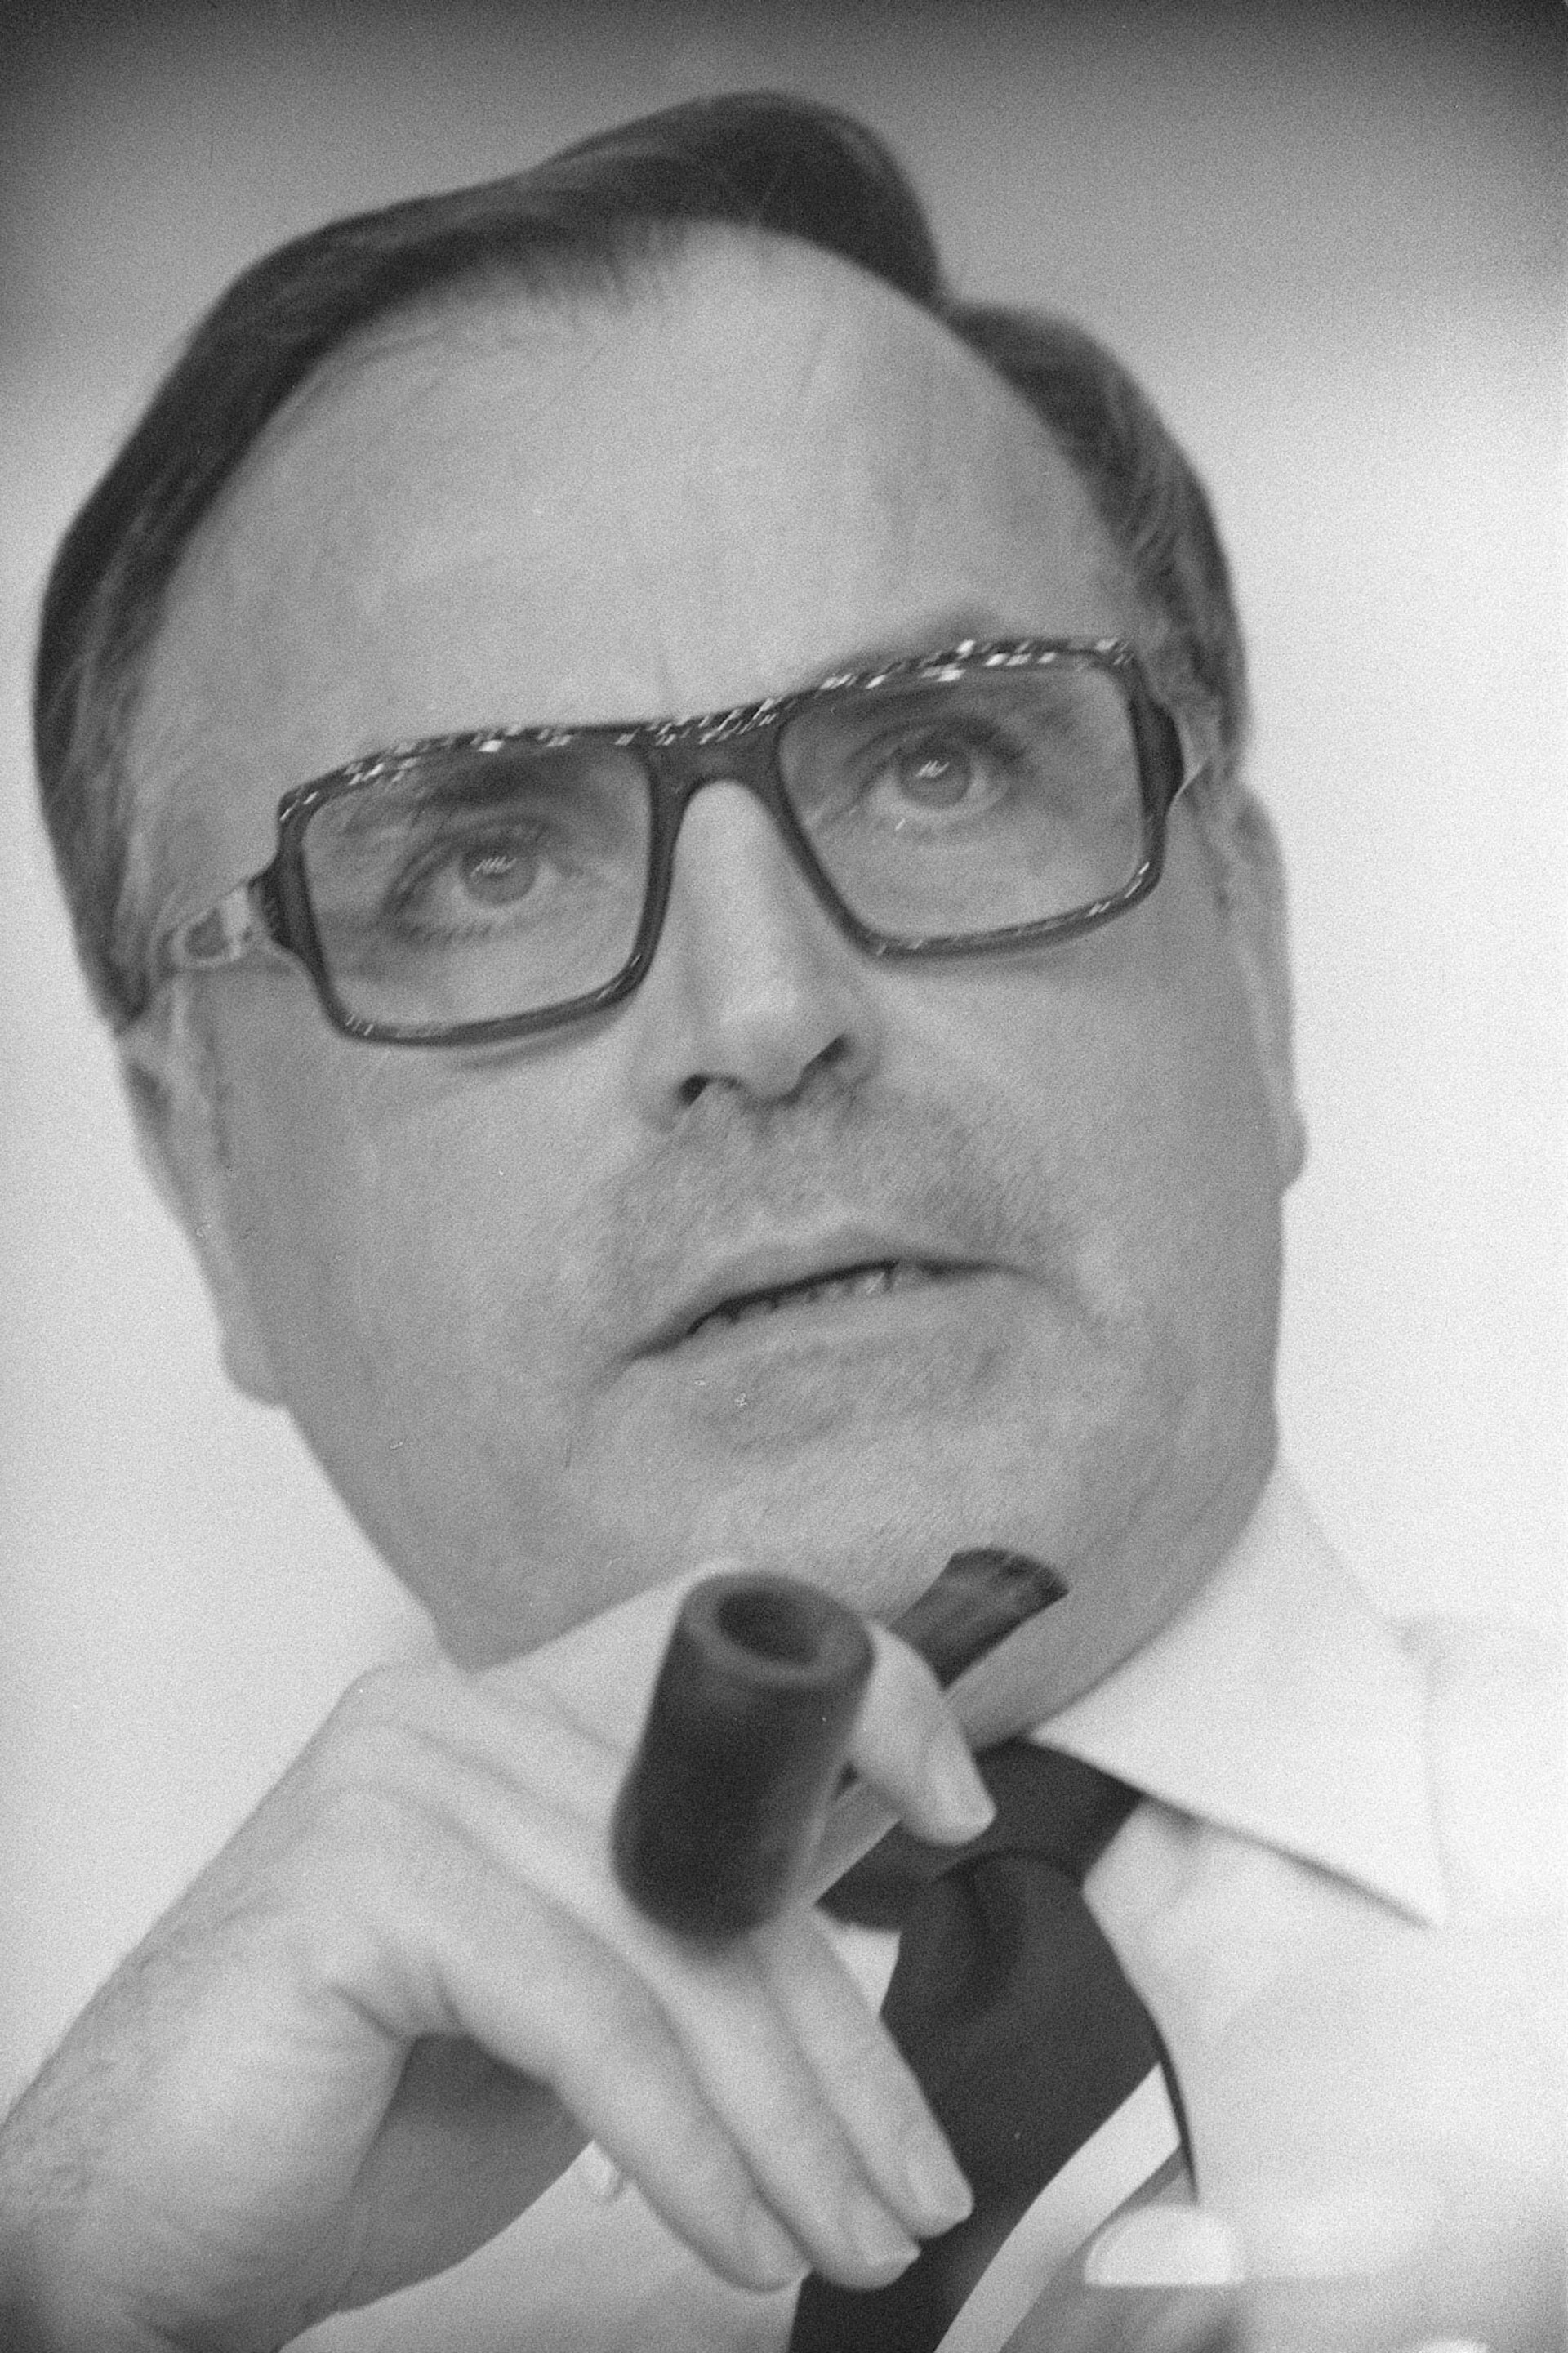 Schwarz-Weiss-Portraitaufnahme von Helmut Kohl mit einer Pfeife